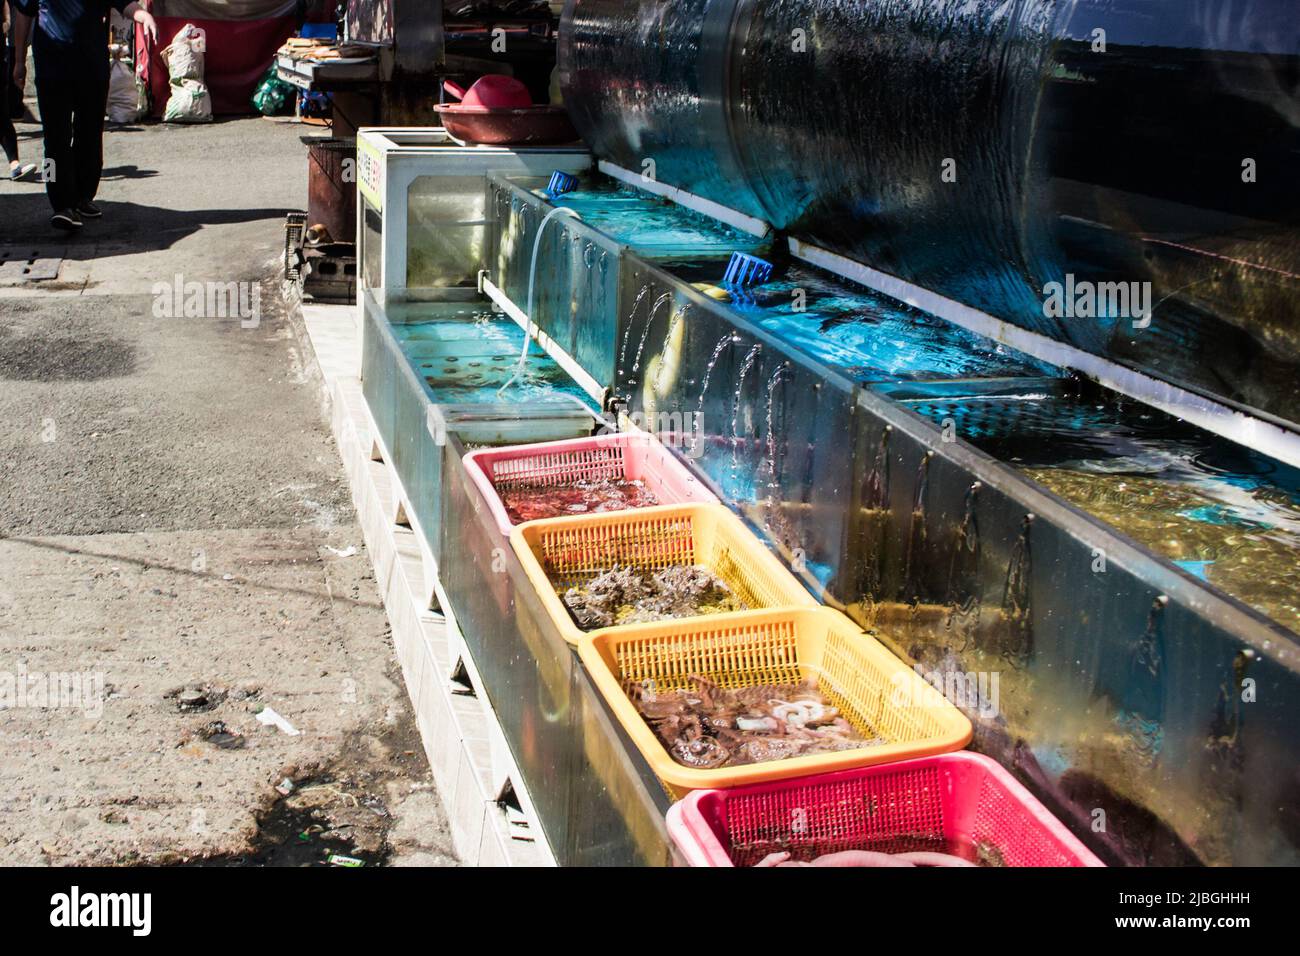 L'image du réservoir de conservation du poisson sur le marché du poisson à Busan, en Corée du Sud. Il y a des palourdes et pêchées à l'intérieur. Banque D'Images